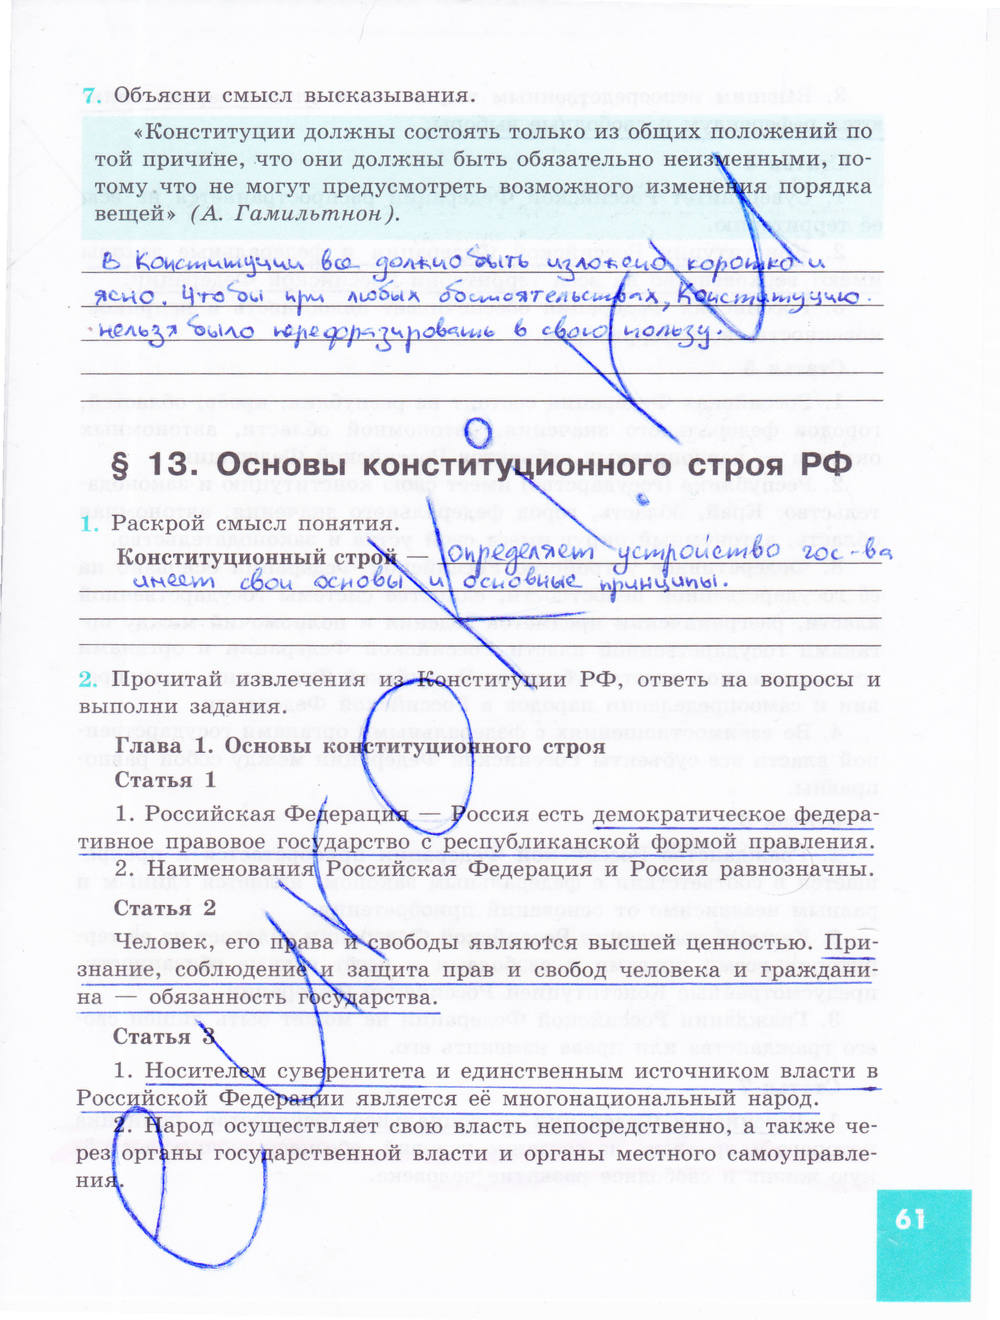 Зеленая тетрадь, 9 класс, Котова О.А. Лискова Т.Е., 2015, задание: стр. 61